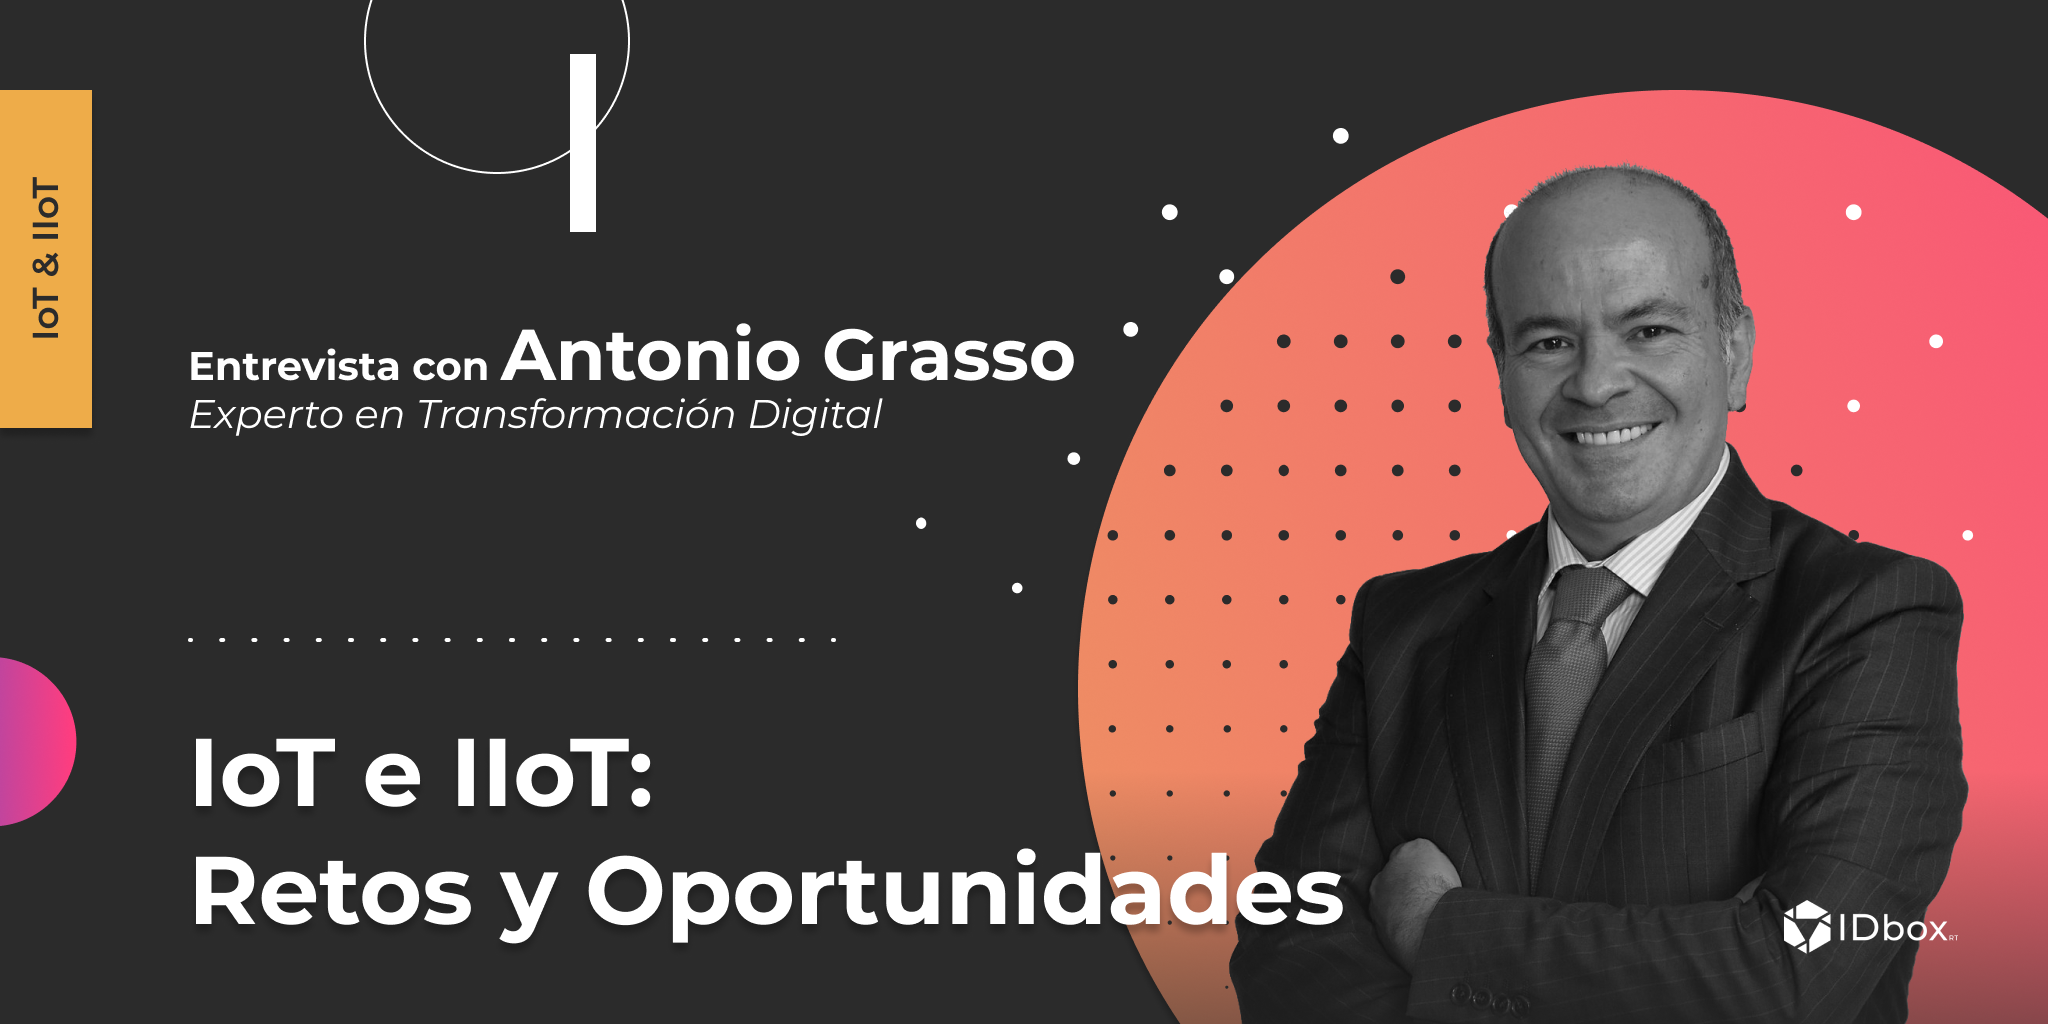 IoT e IIoT: Retos y oportunidades – Entrevista con Antonio Grasso